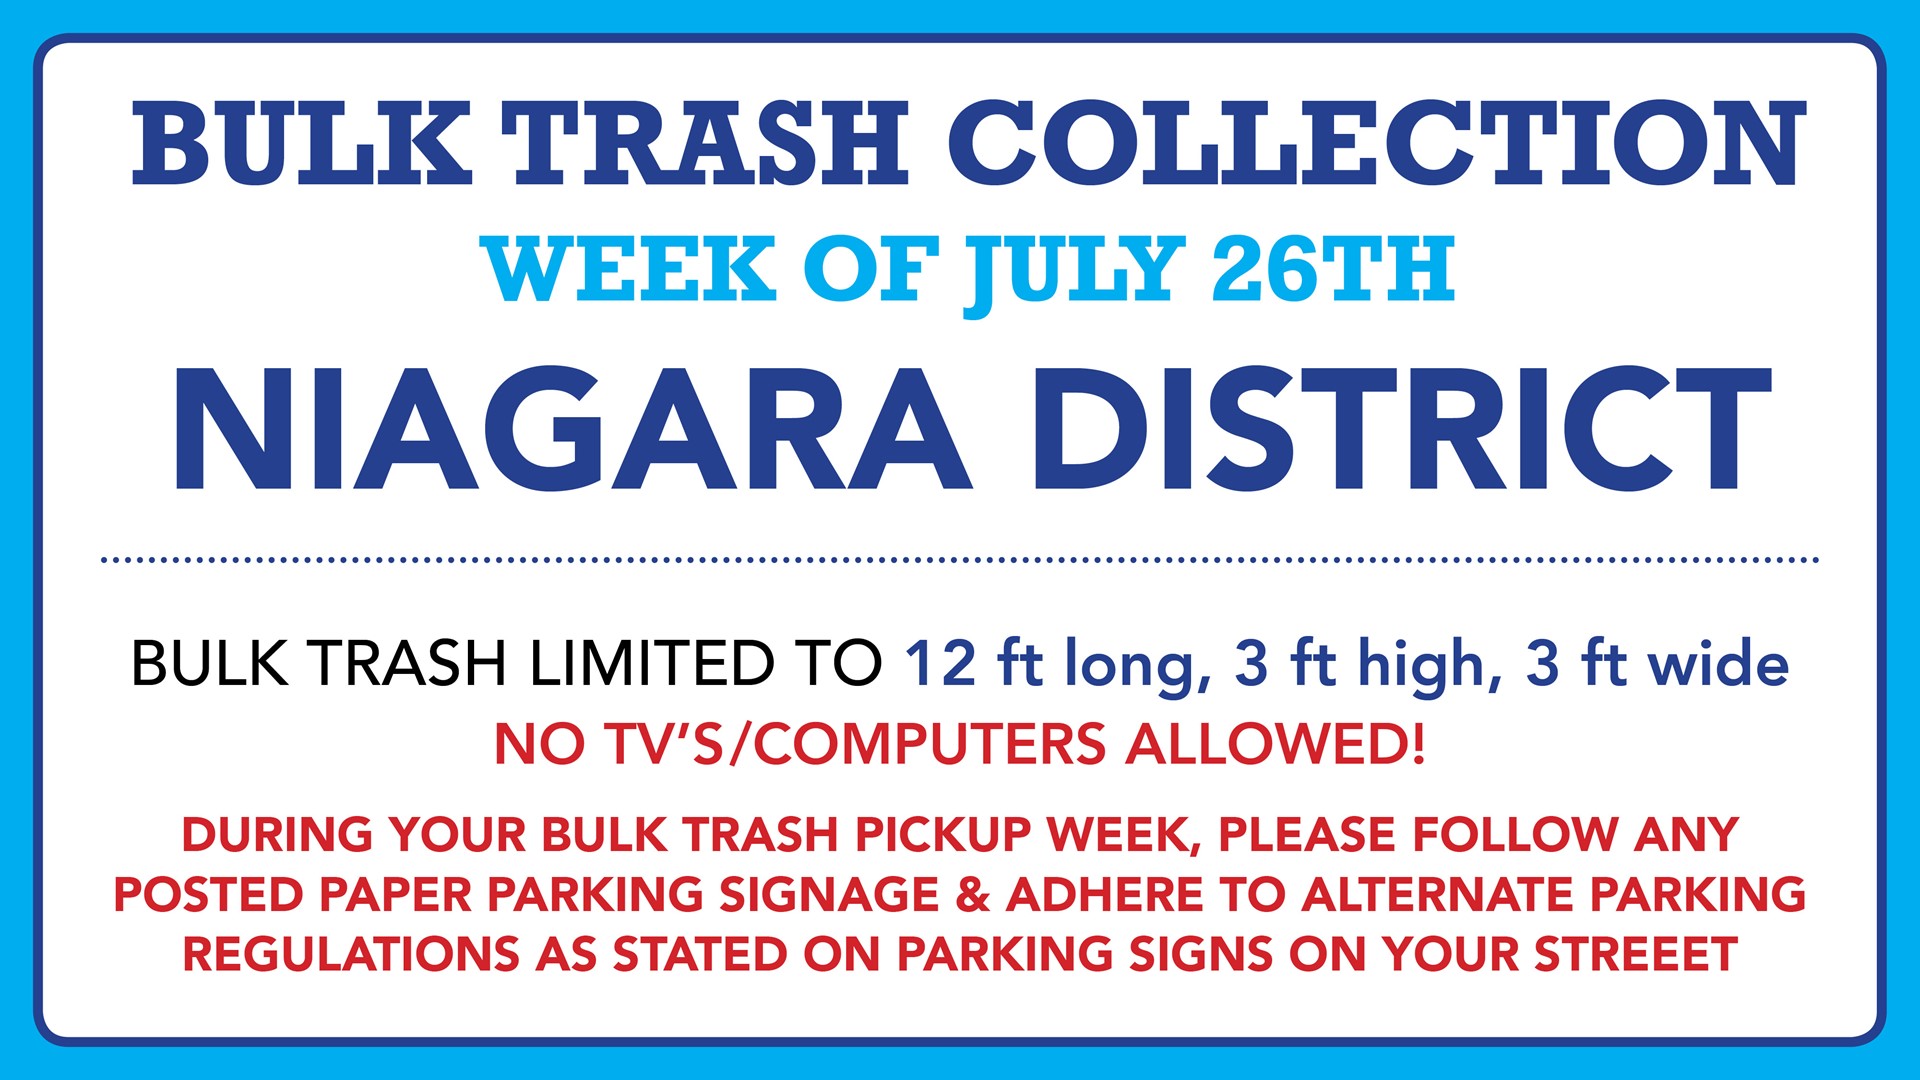 Bulk trash pickup this week for Niagara District